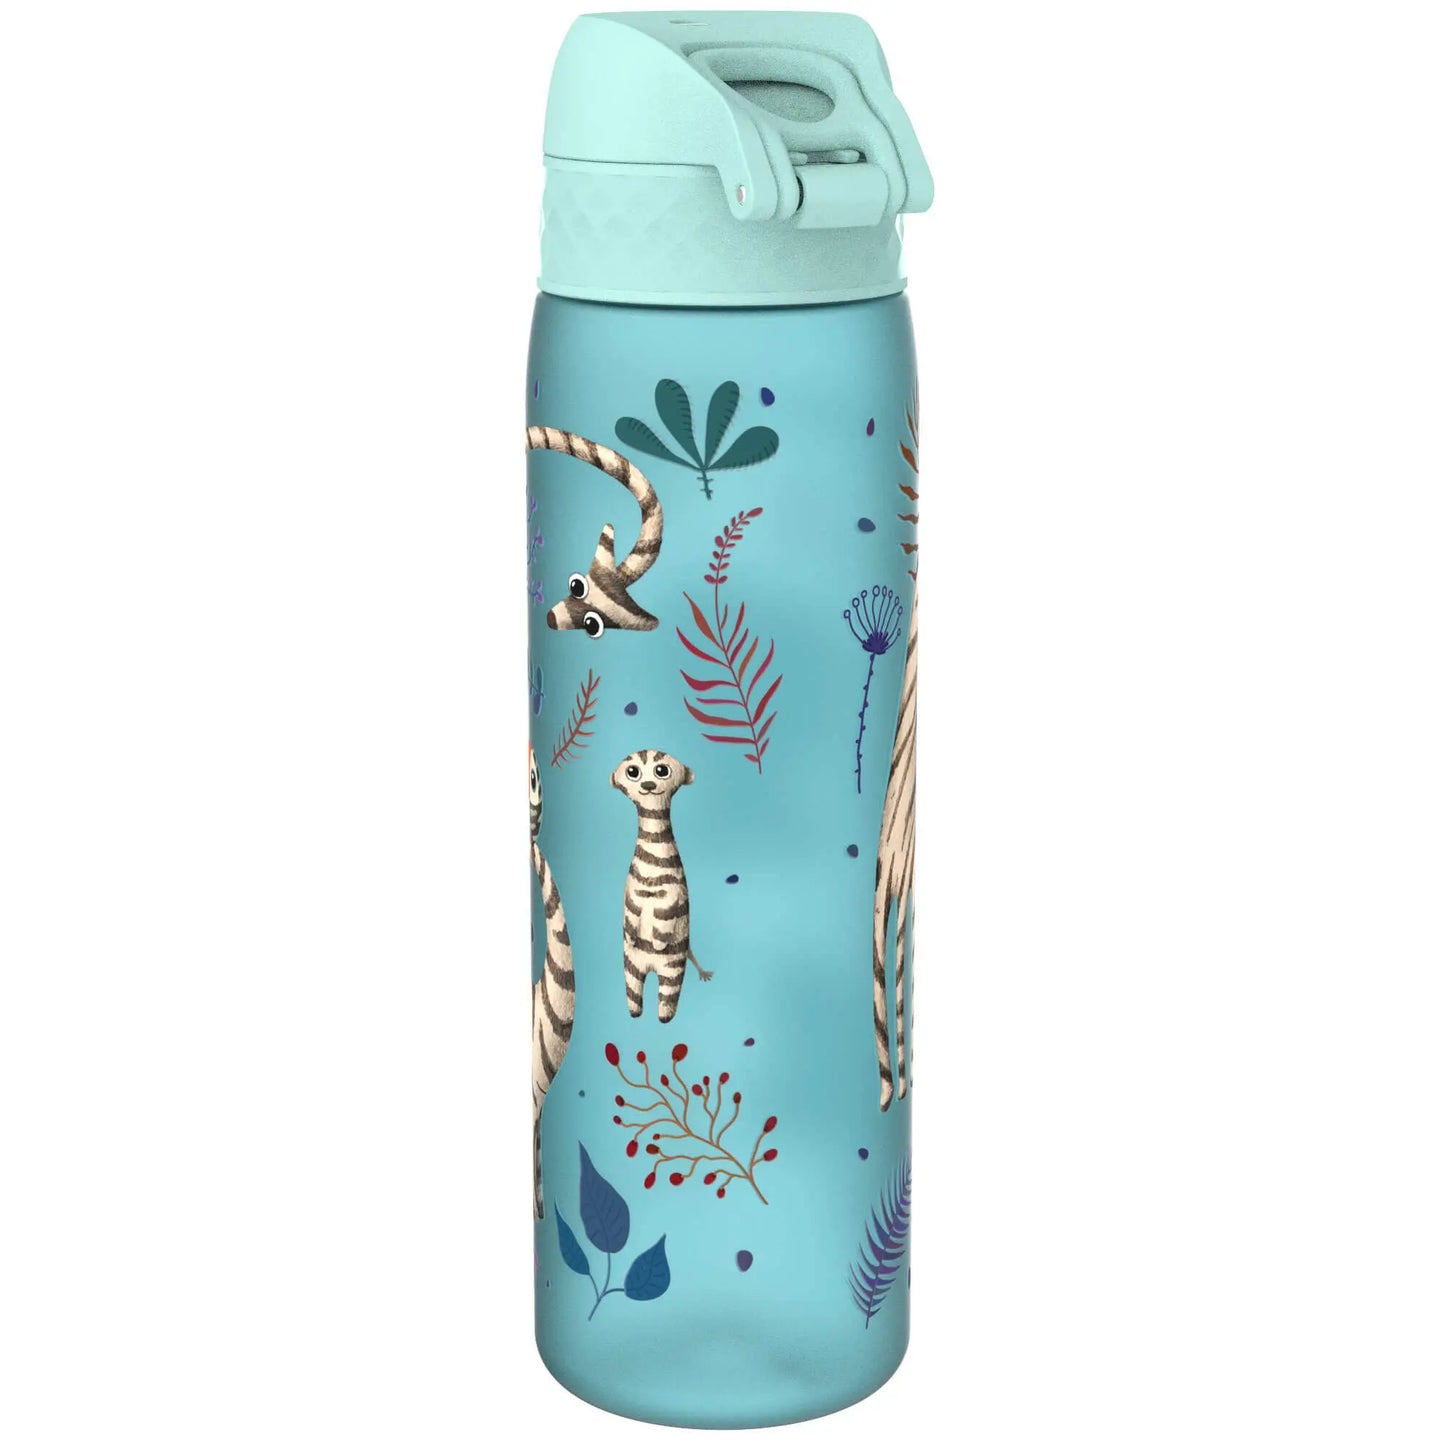 Leak Proof Slim Water Bottle, Recyclon™, Zebra Fans, 500ml (18oz) Ion8